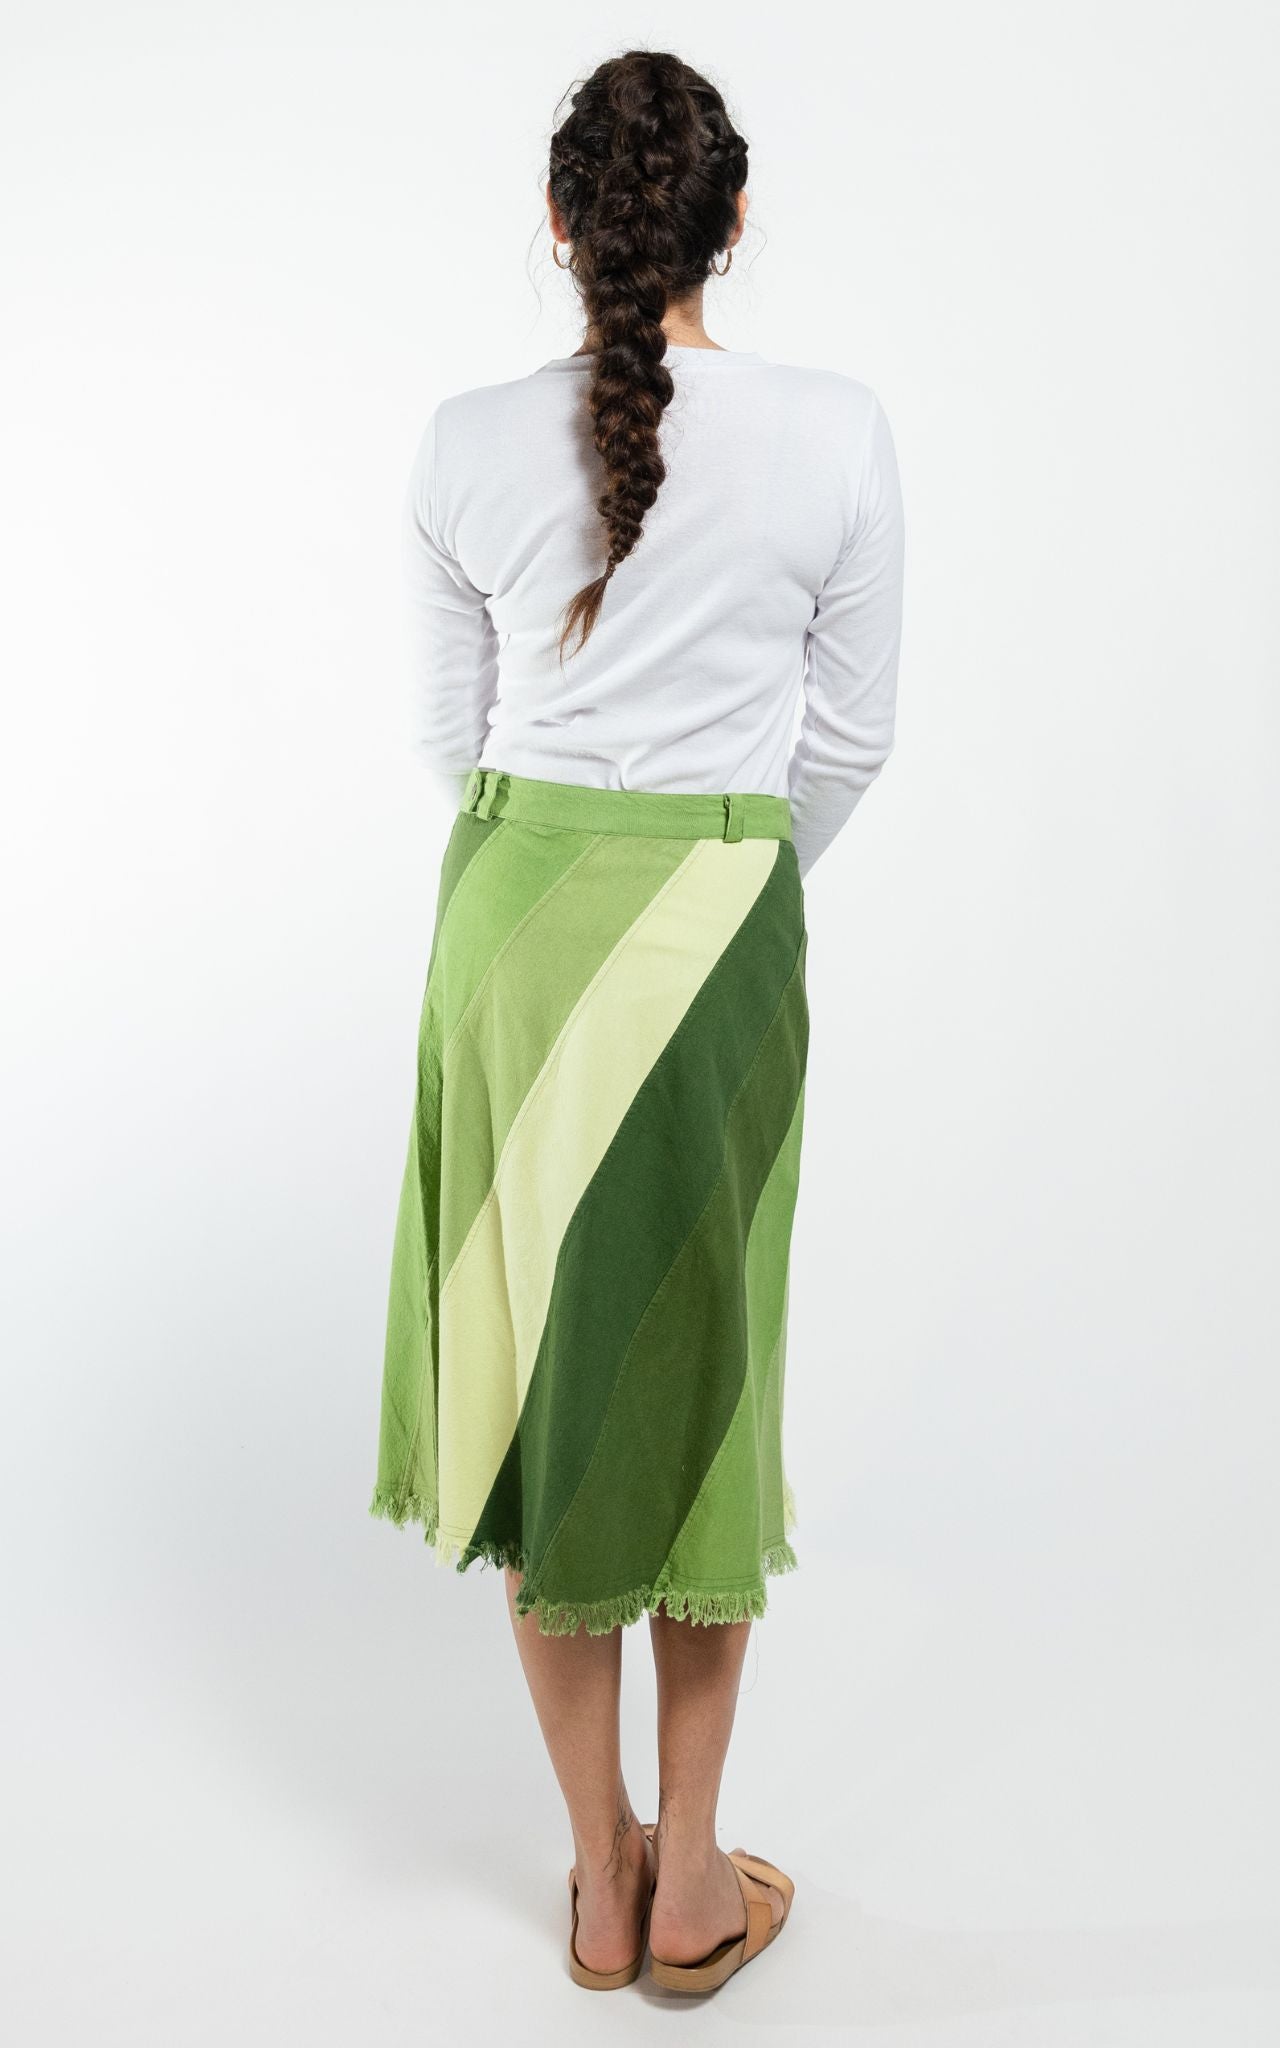 Surya Australia Cotton 'Freya' Skirt made in Nepal - Green